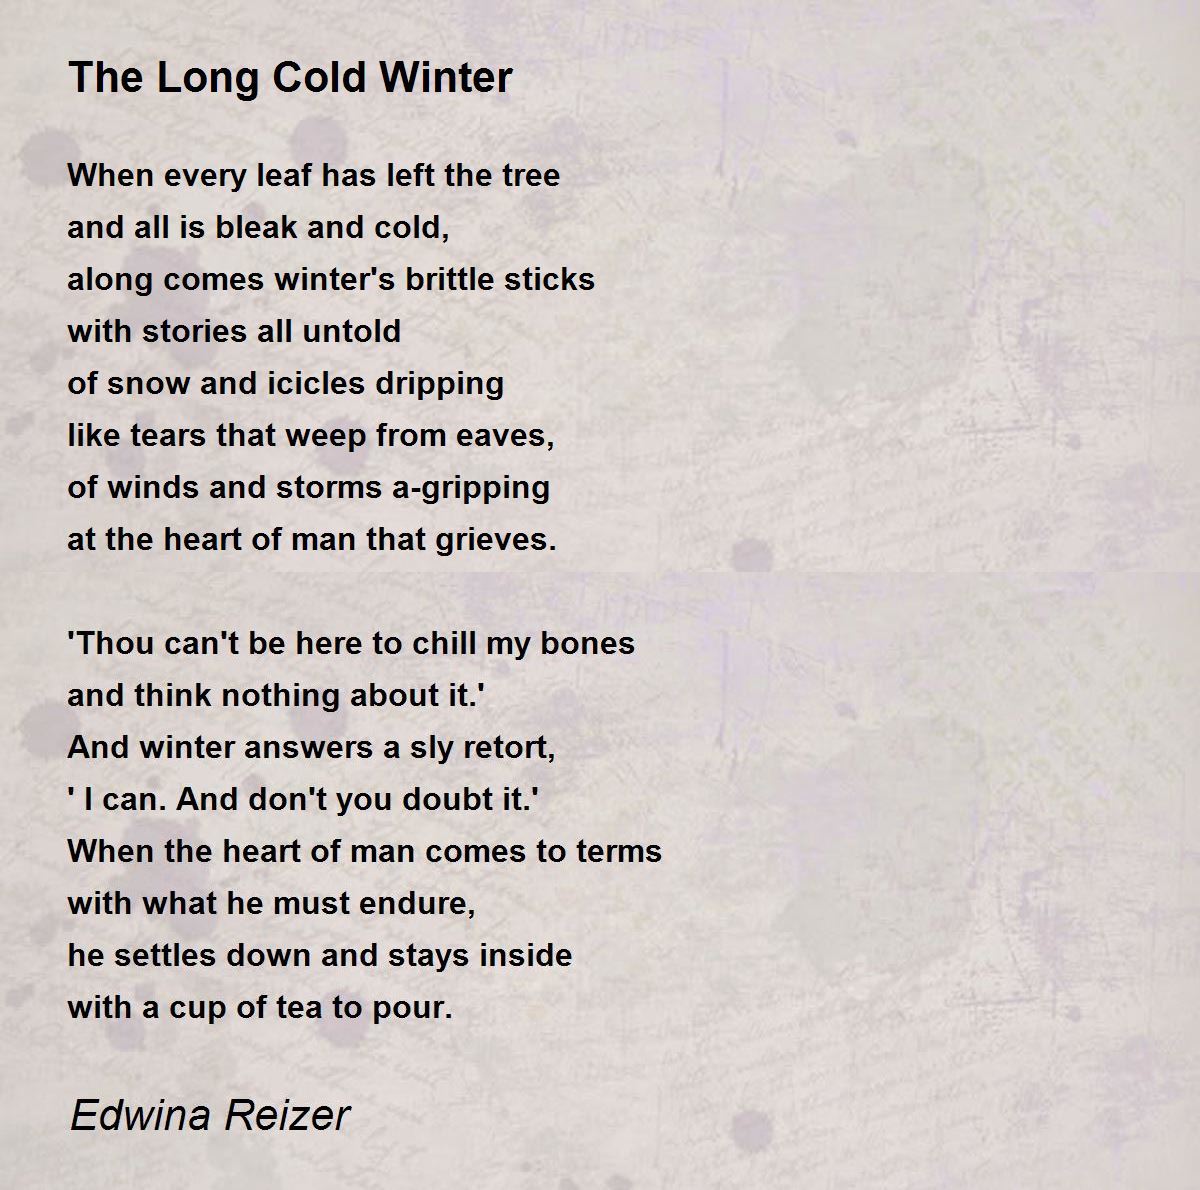 The Long Cold Winter - The Long Cold Winter Poem by Edwina Reizer